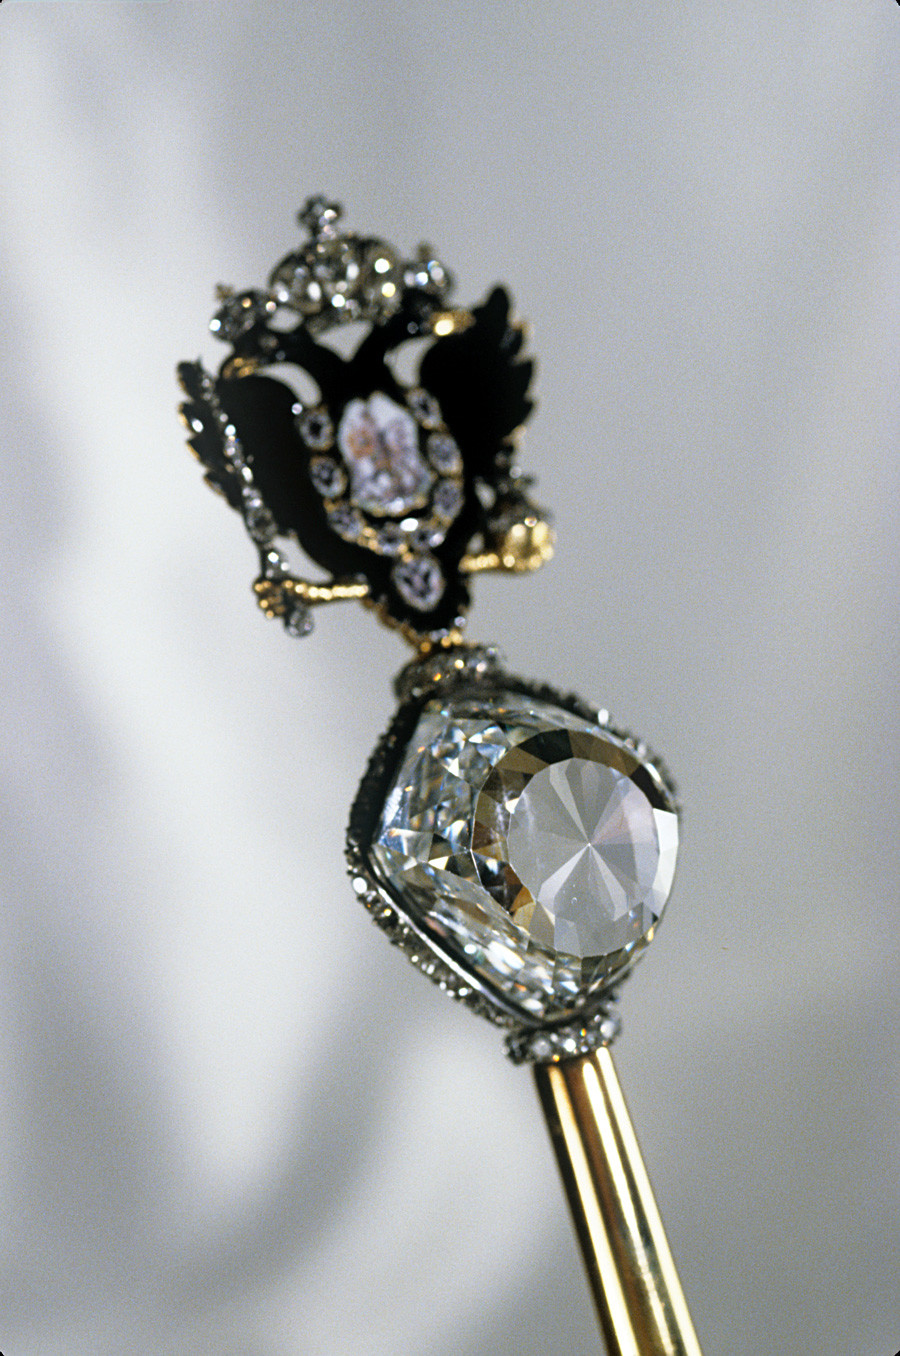 Carski skiptar. Napravljen za Katarinu II. početkom 1770-ih, dugačak 59,5 cm. Zlato prekriveno s osam dijamantskih prstenova. Na vrhu je brilijant 